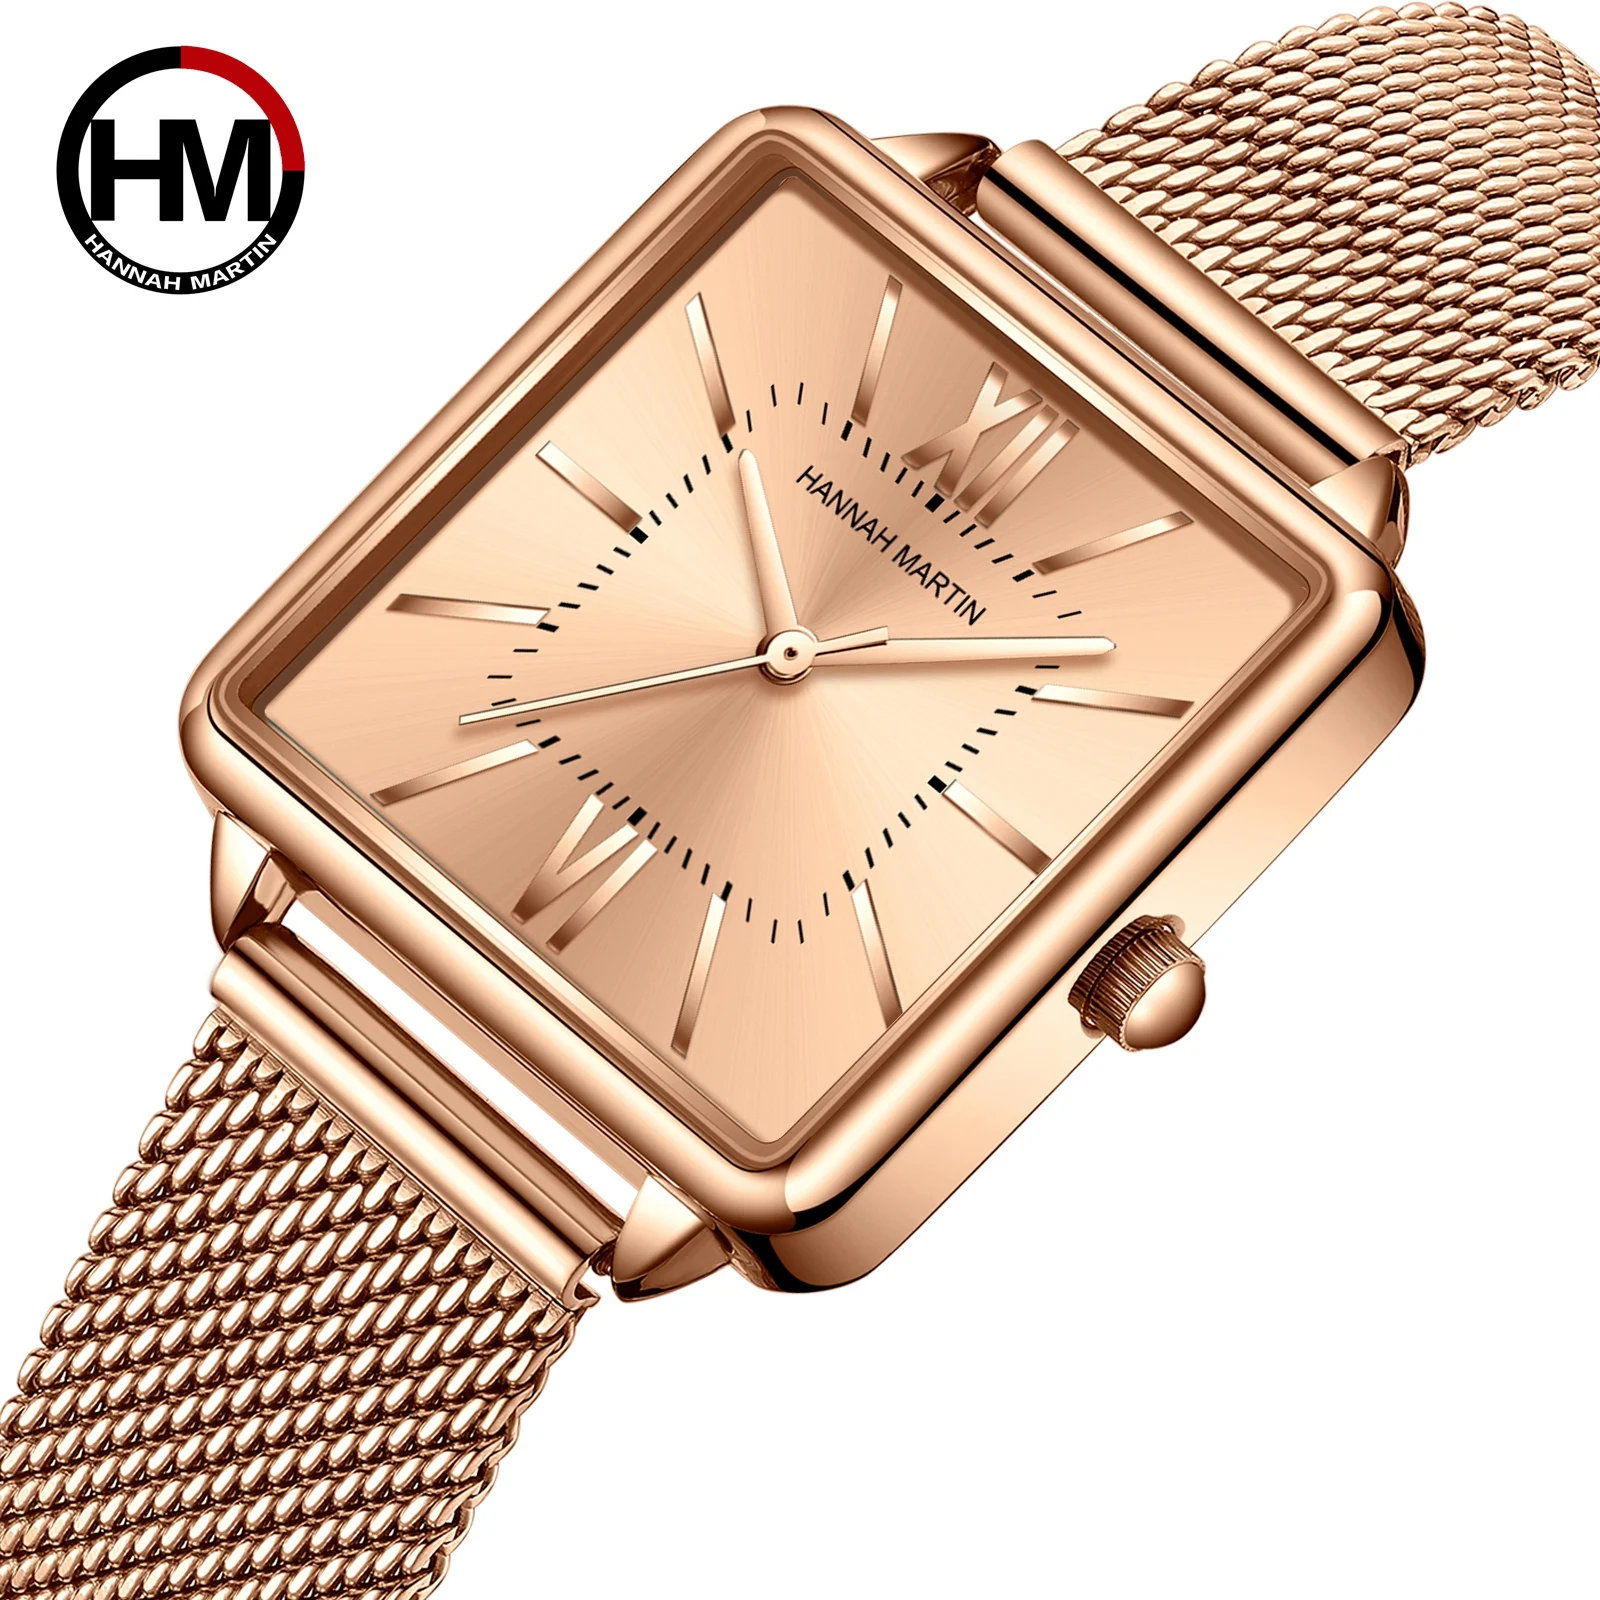 

Hannah Martin New Brief and elegant Ladies Watch Luxury Brand Fashion Quartz Wristwatch Gifts Rose Gold Women Steel Watch